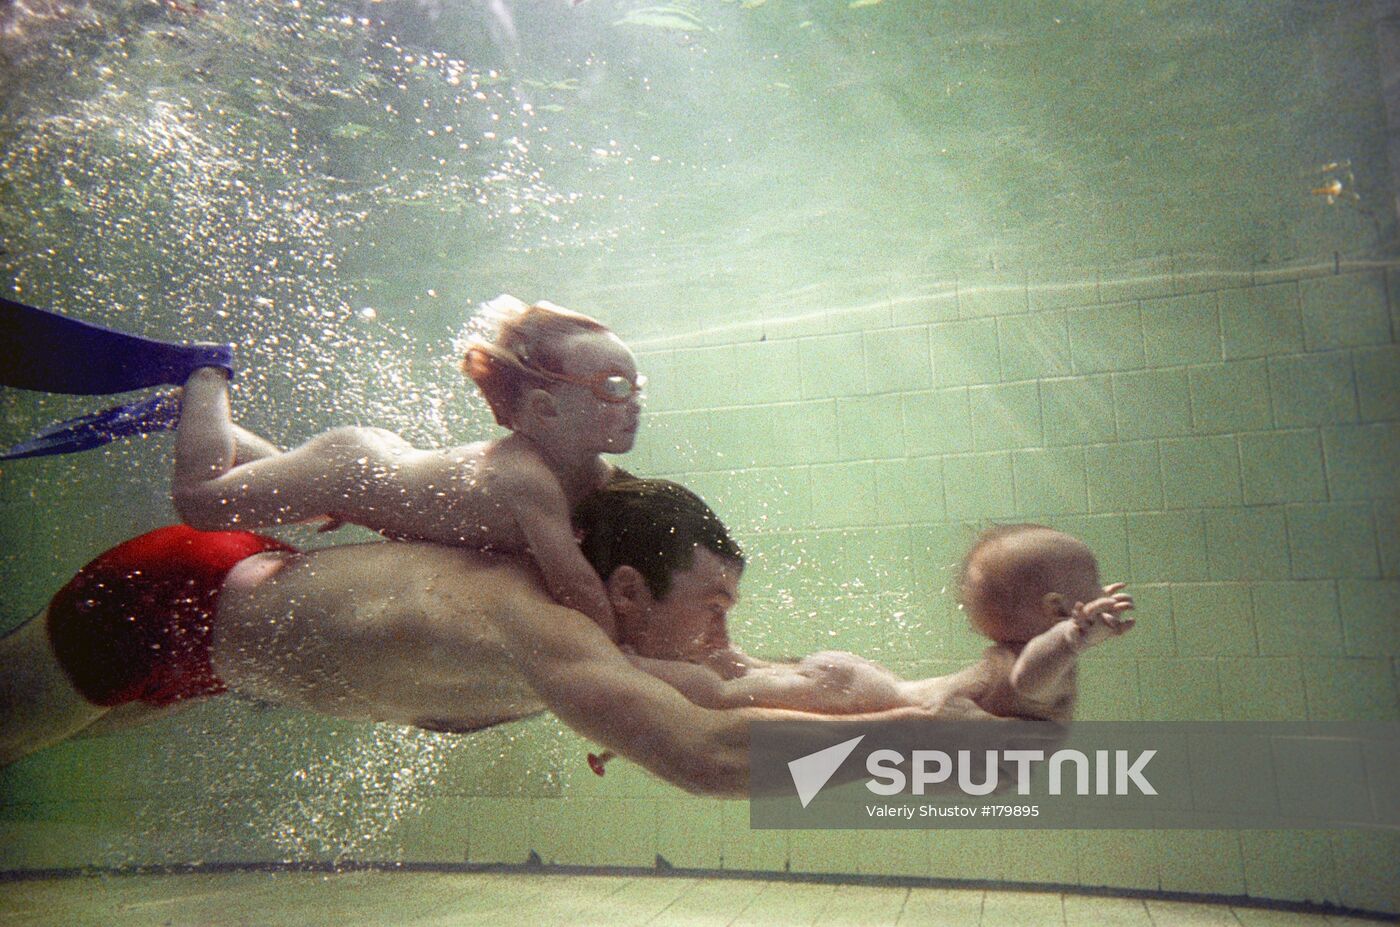 father children underwater swimming